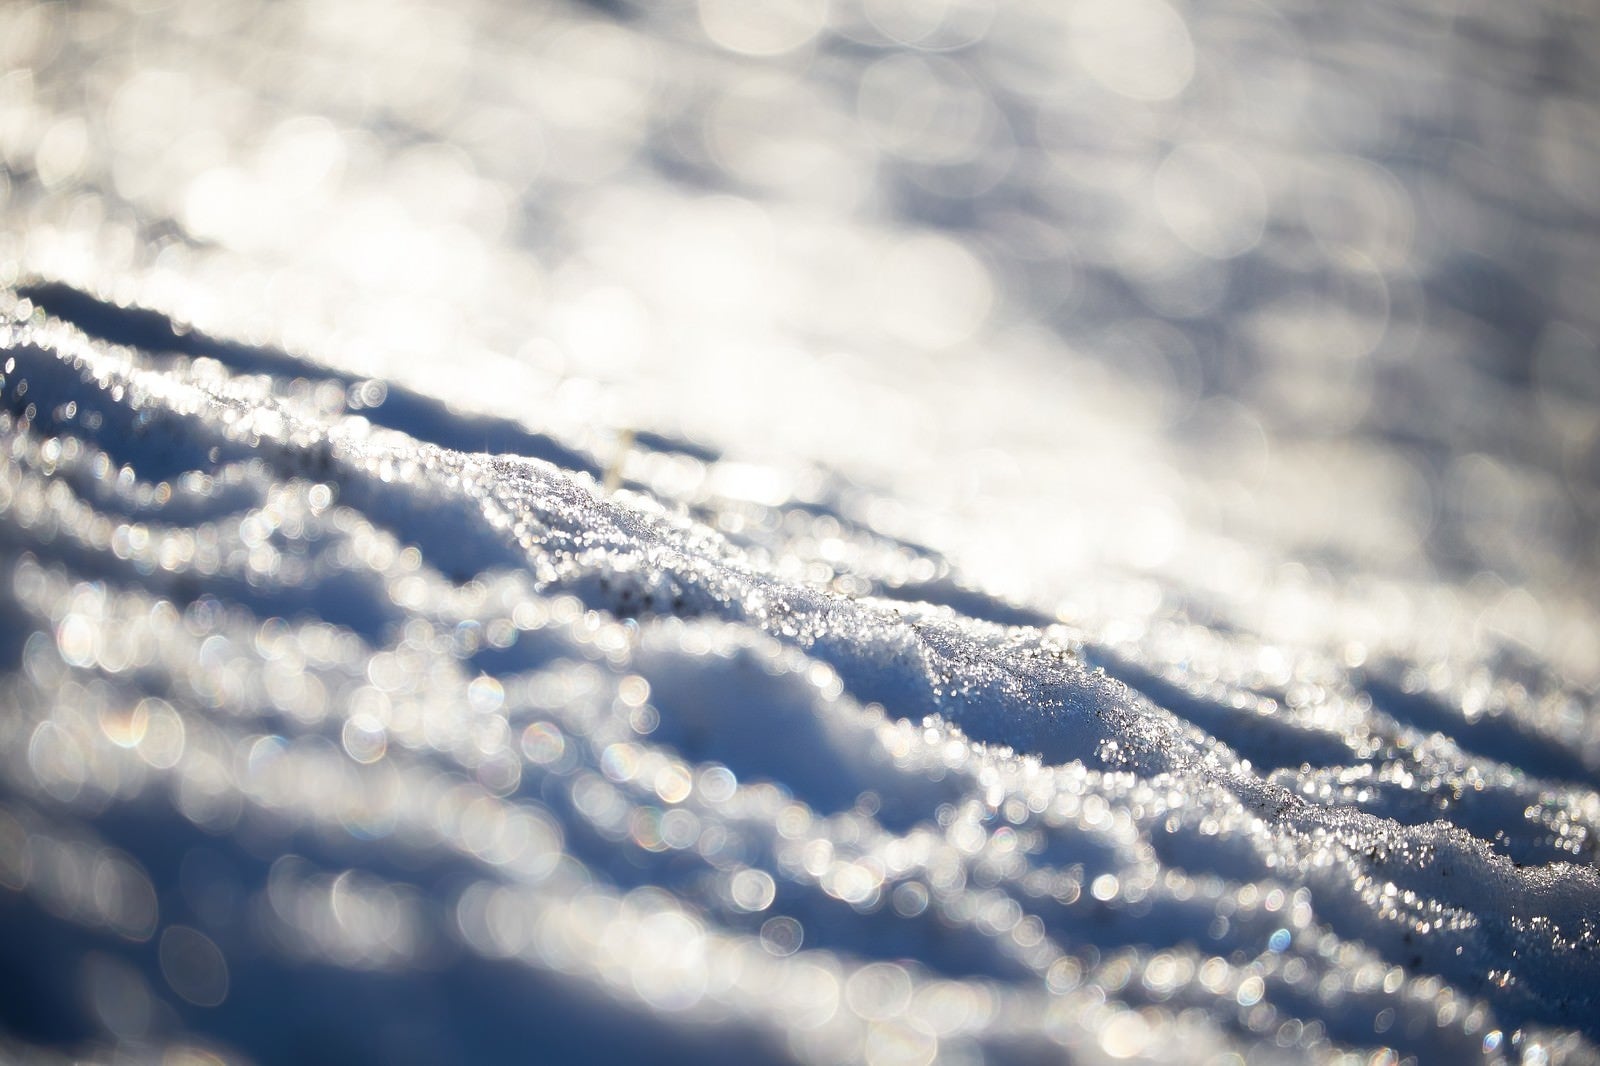 「雪と反射する光」の写真